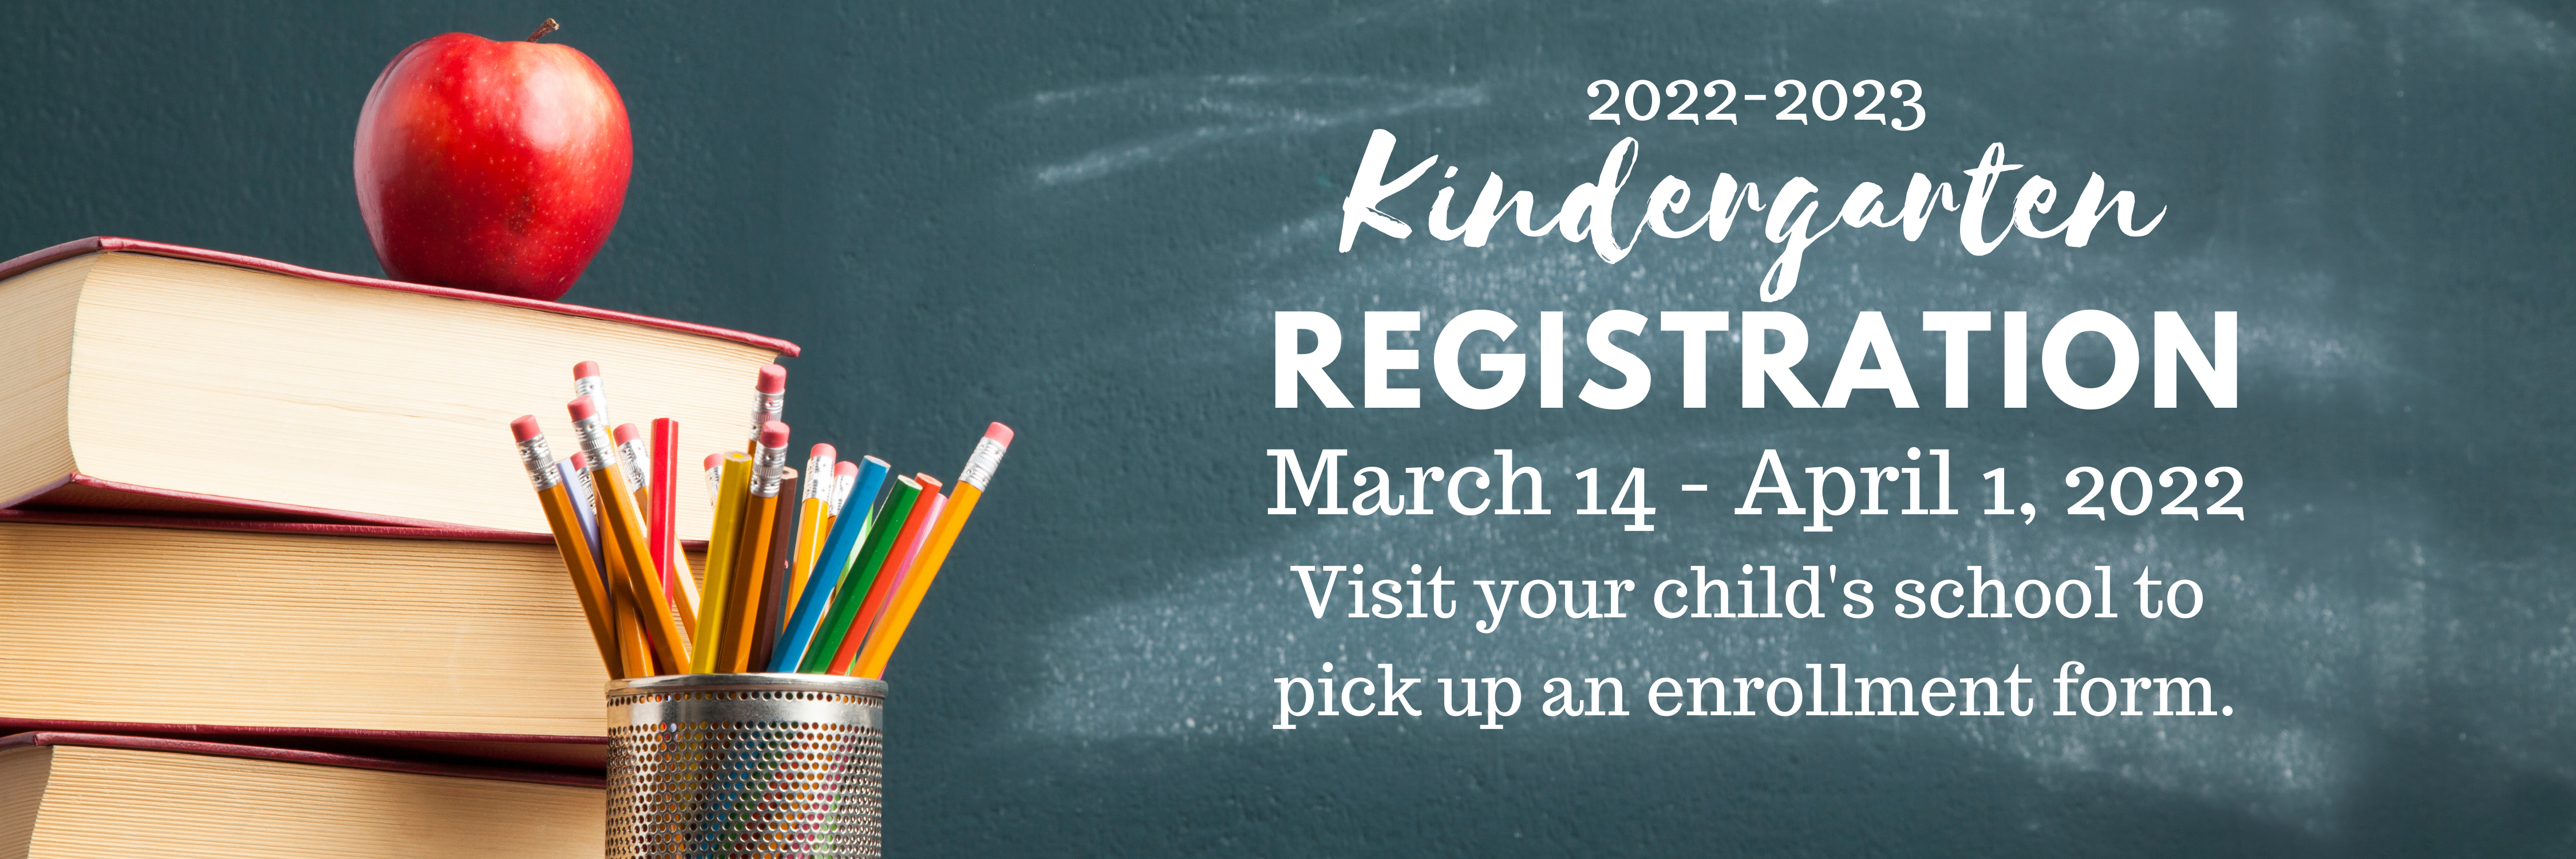 2022-2023 Kindergarten Registration March 14 - April 1, 2022. Visit your child's school  to pick up an enrollment form.